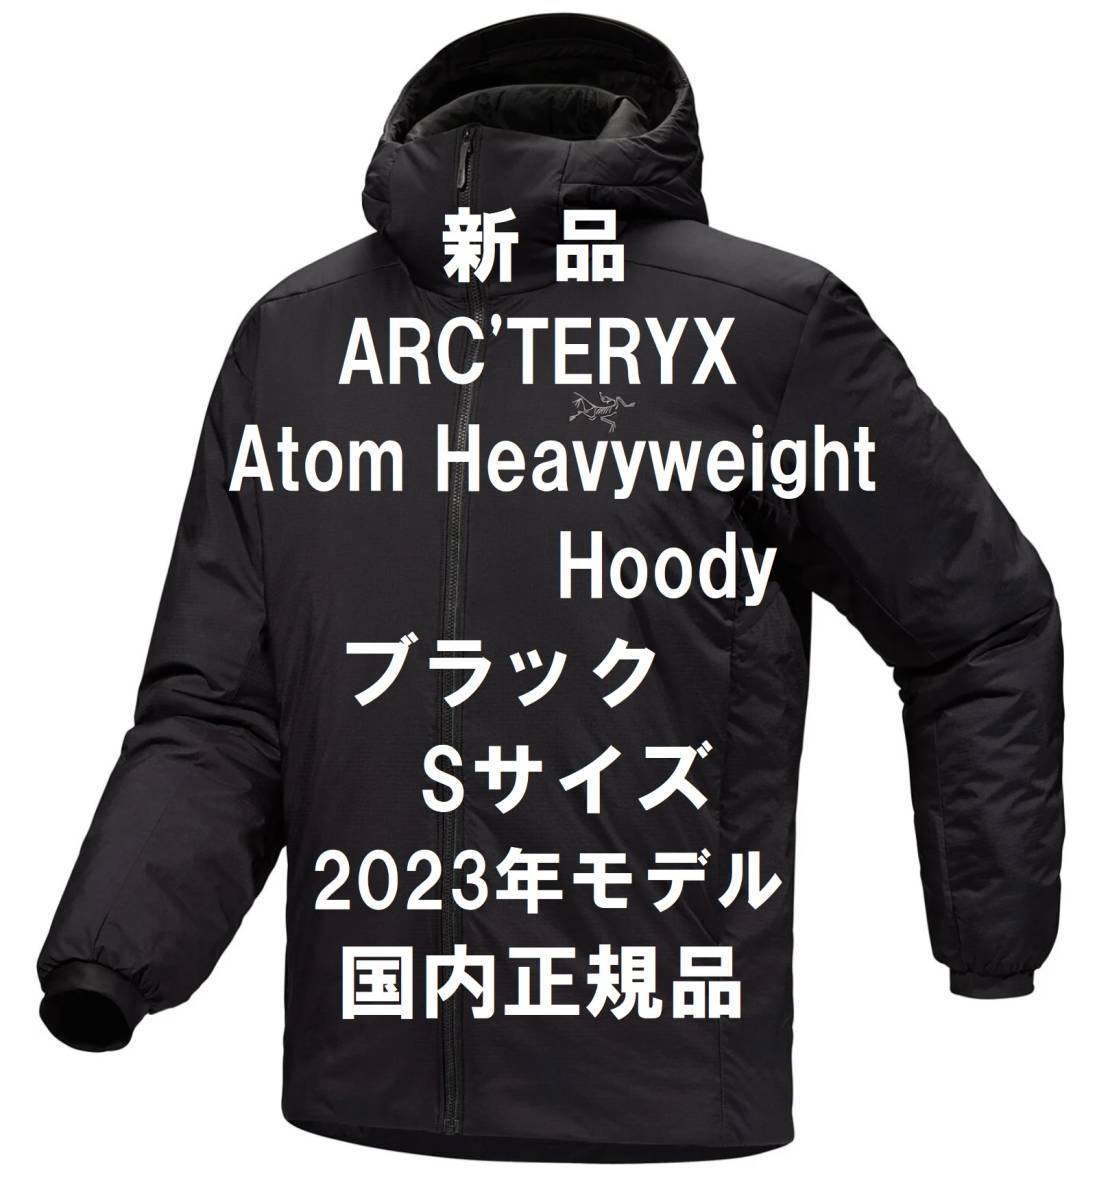 【3月24日まで52,990円で購入可】【新品】ARC’TERYX Atom Heavyweight Hoody アトム ヘビーウェイト フーディ ブラック Sサイズ